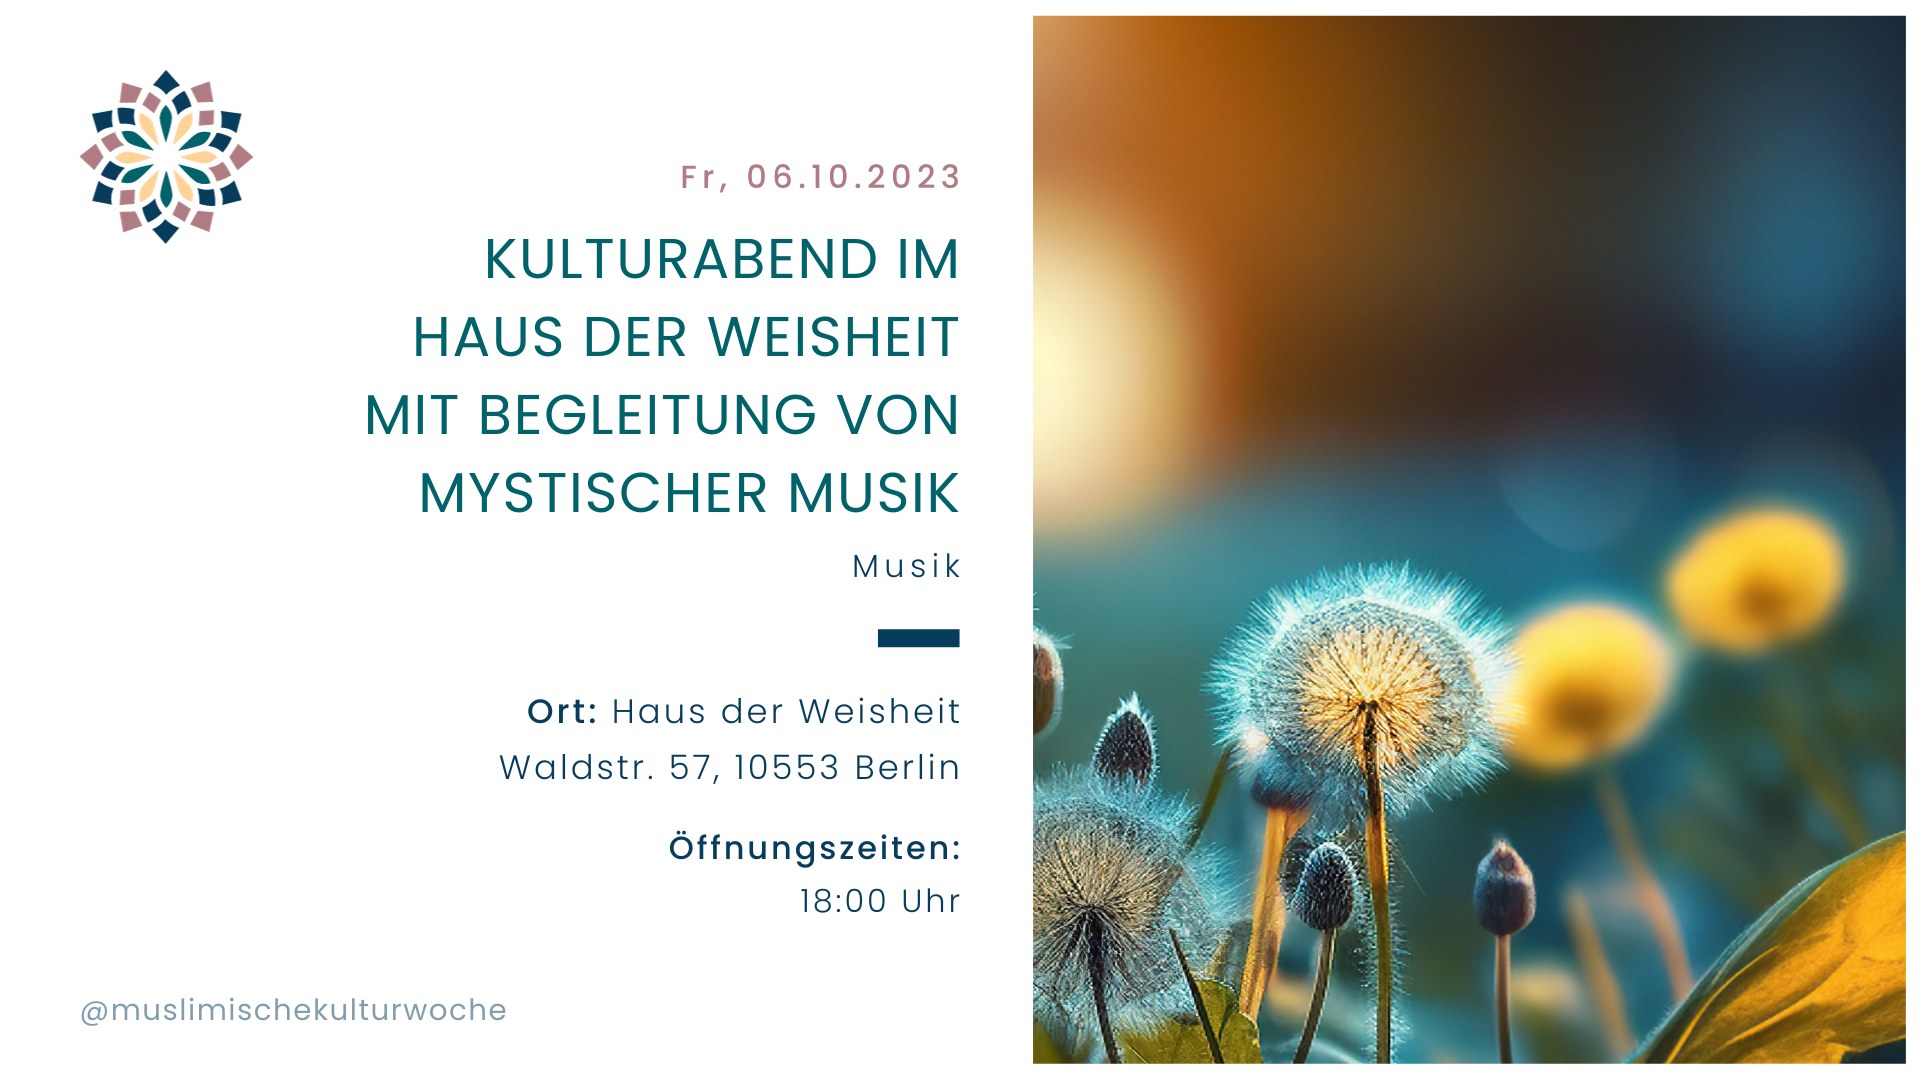 Kulturabend im Haus der Weisheit mit Begleitung von mystischer Musik